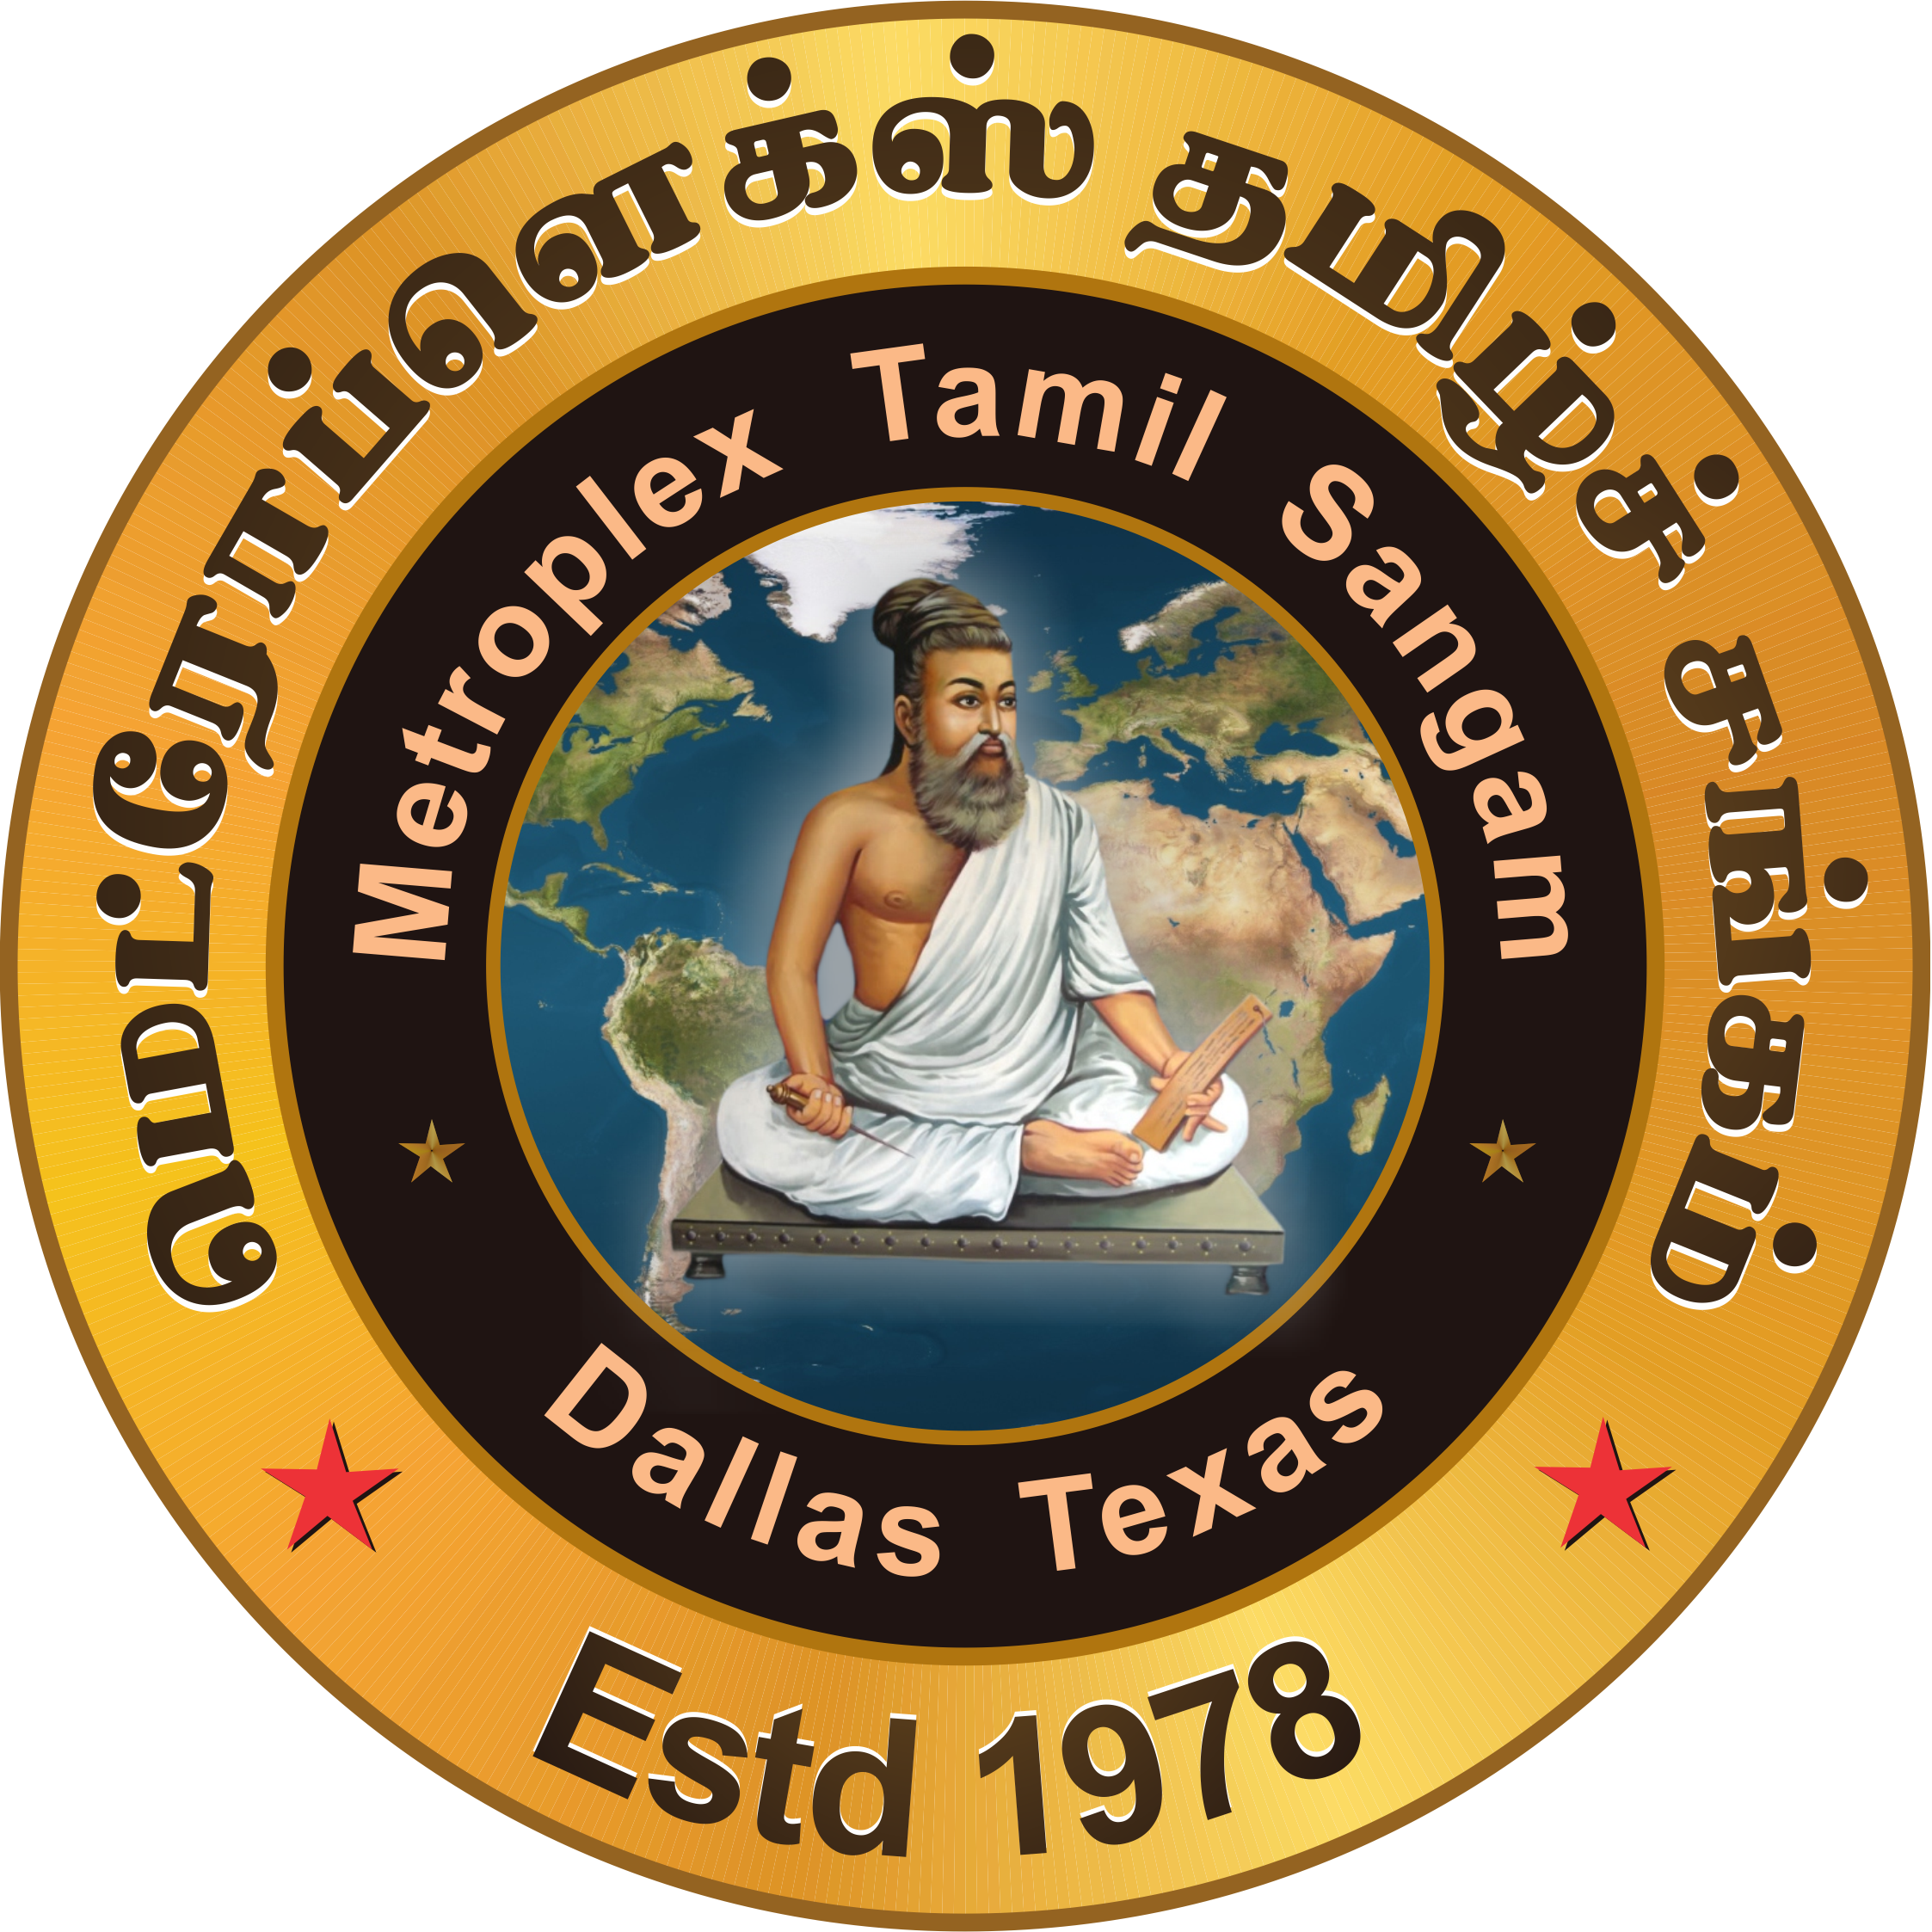 Metroplex Tamil Sangam